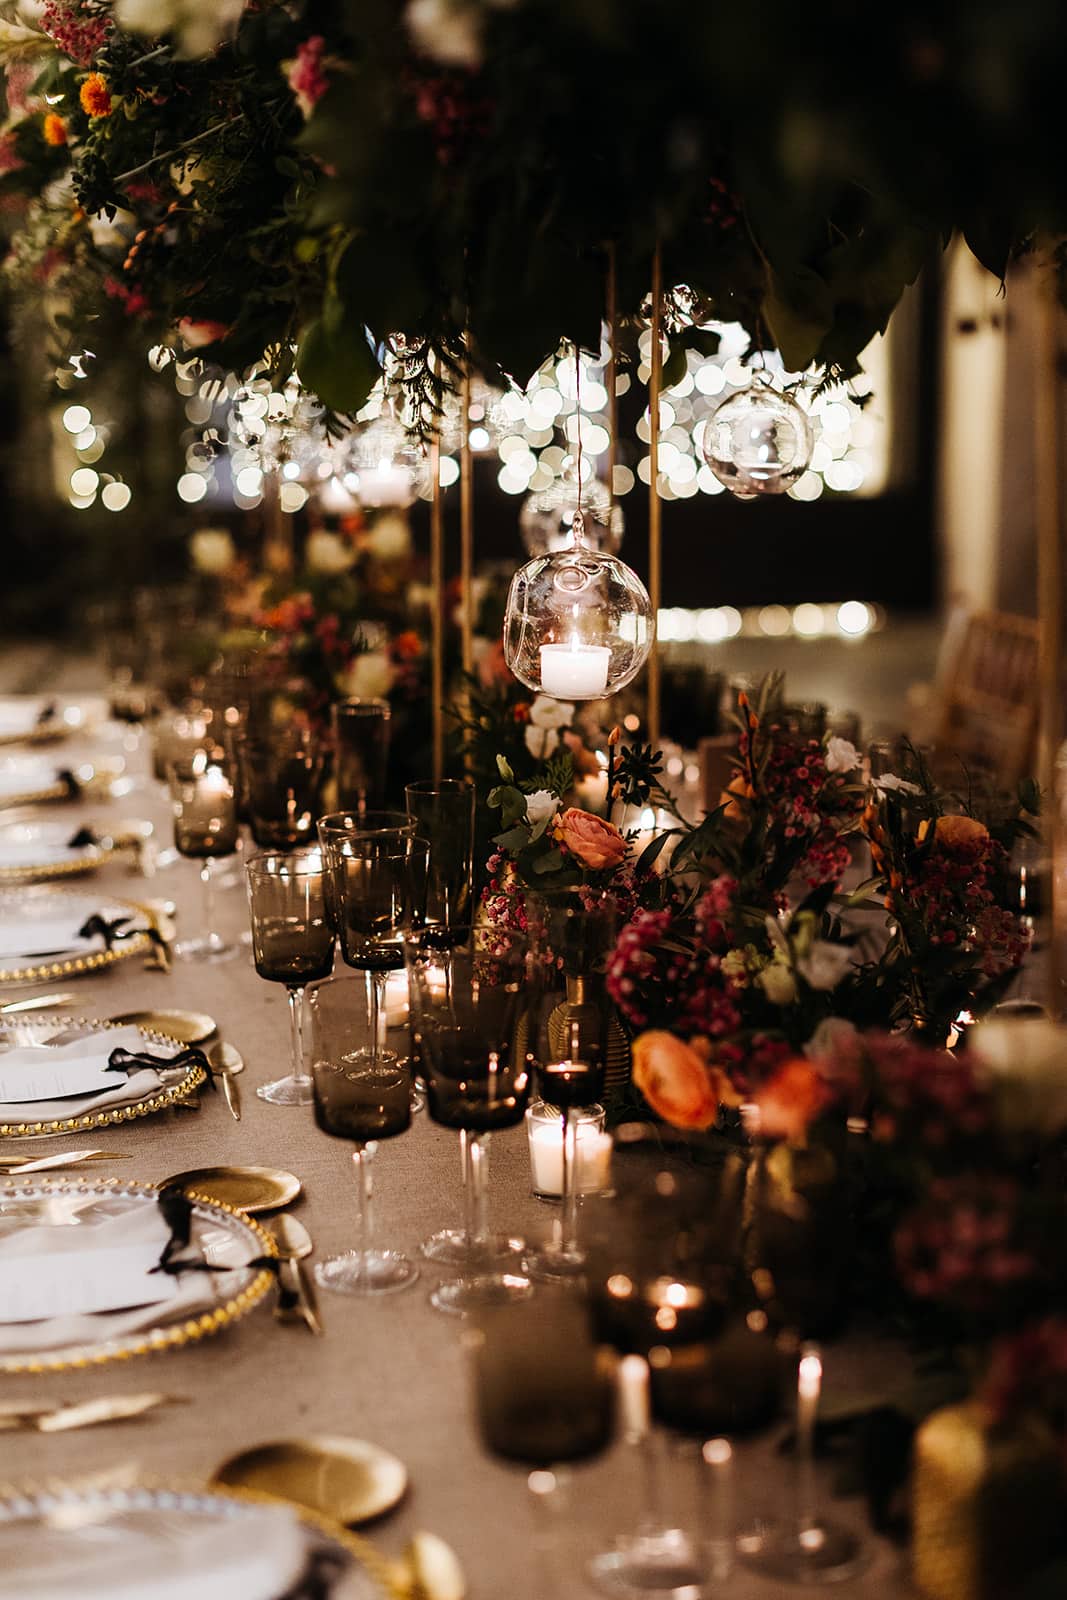 Mesa de boda con vajilla dorada, lámparas colgantes y abundantes flores en tonos verdes y rojos, creando una atmósfera romántica y lujosa